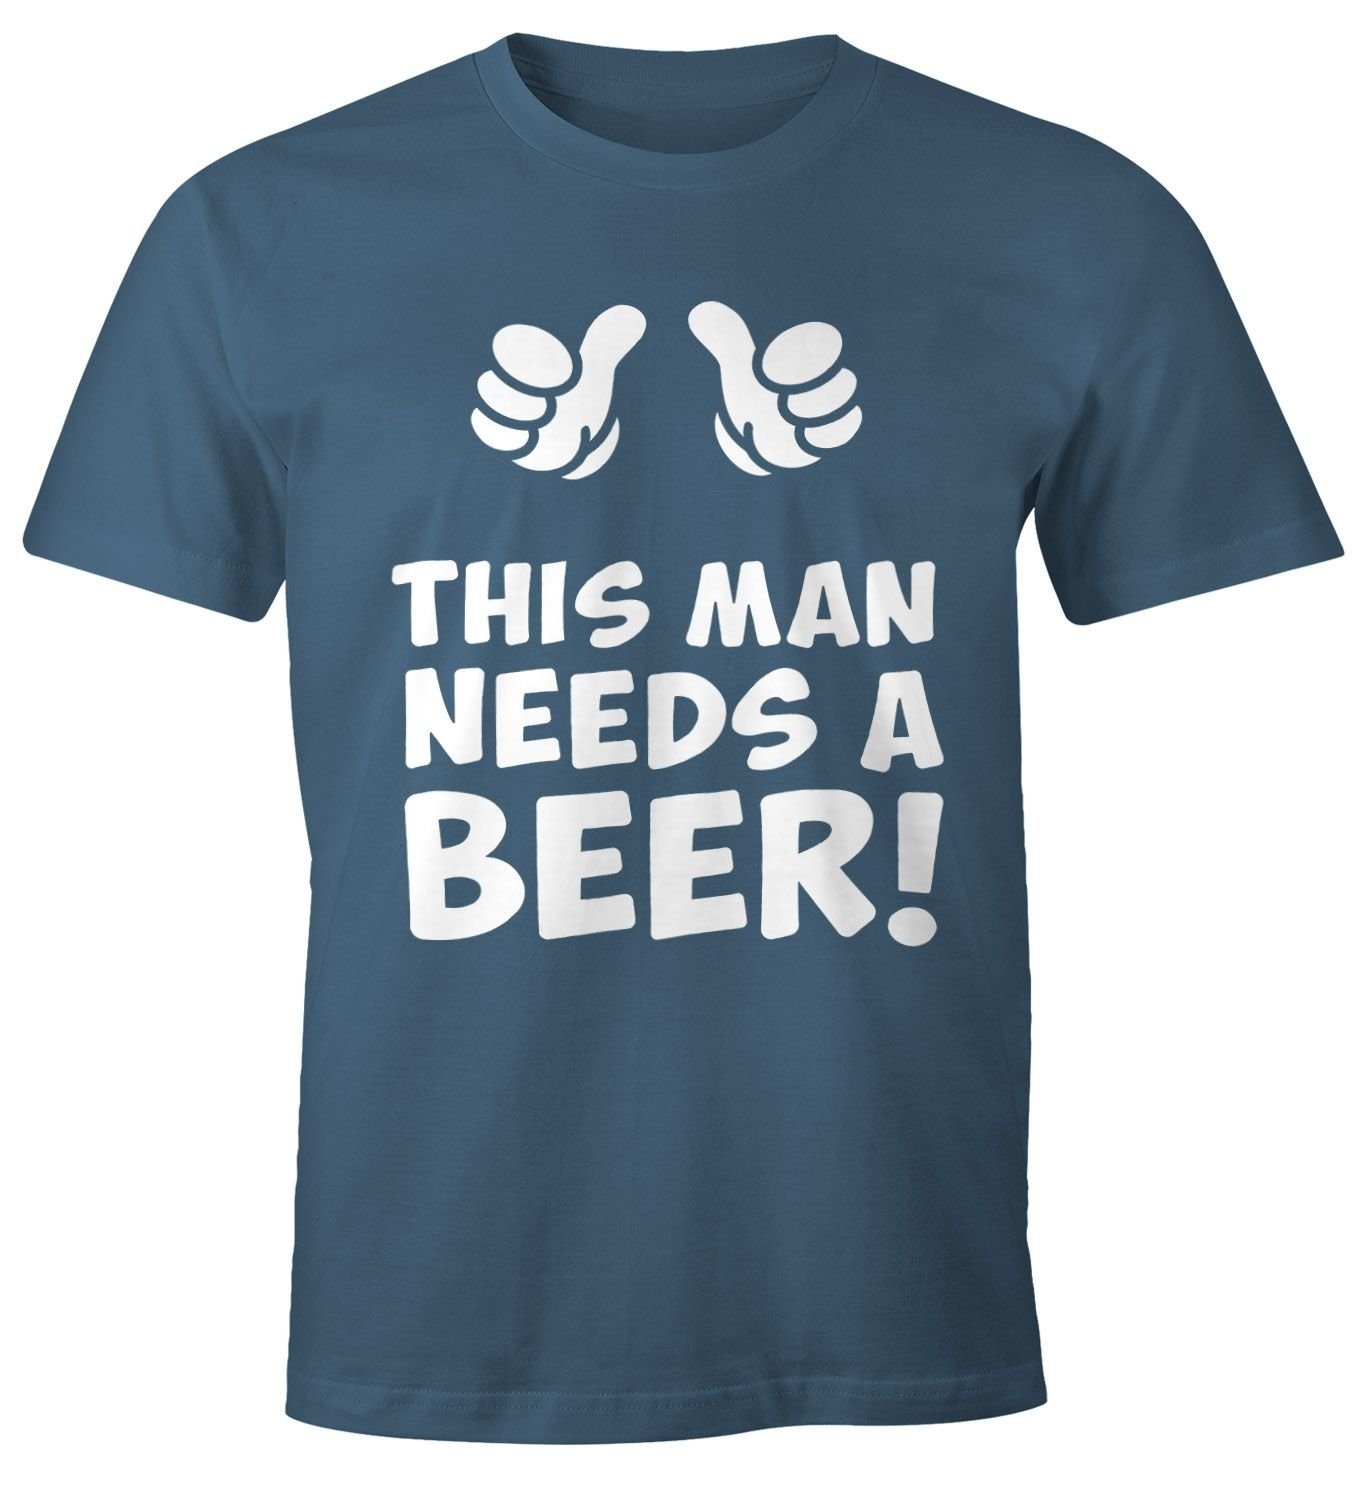 MoonWorks Print-Shirt Print Herren Moonworks® man T-Shirt a needs This blau mit beer Bier